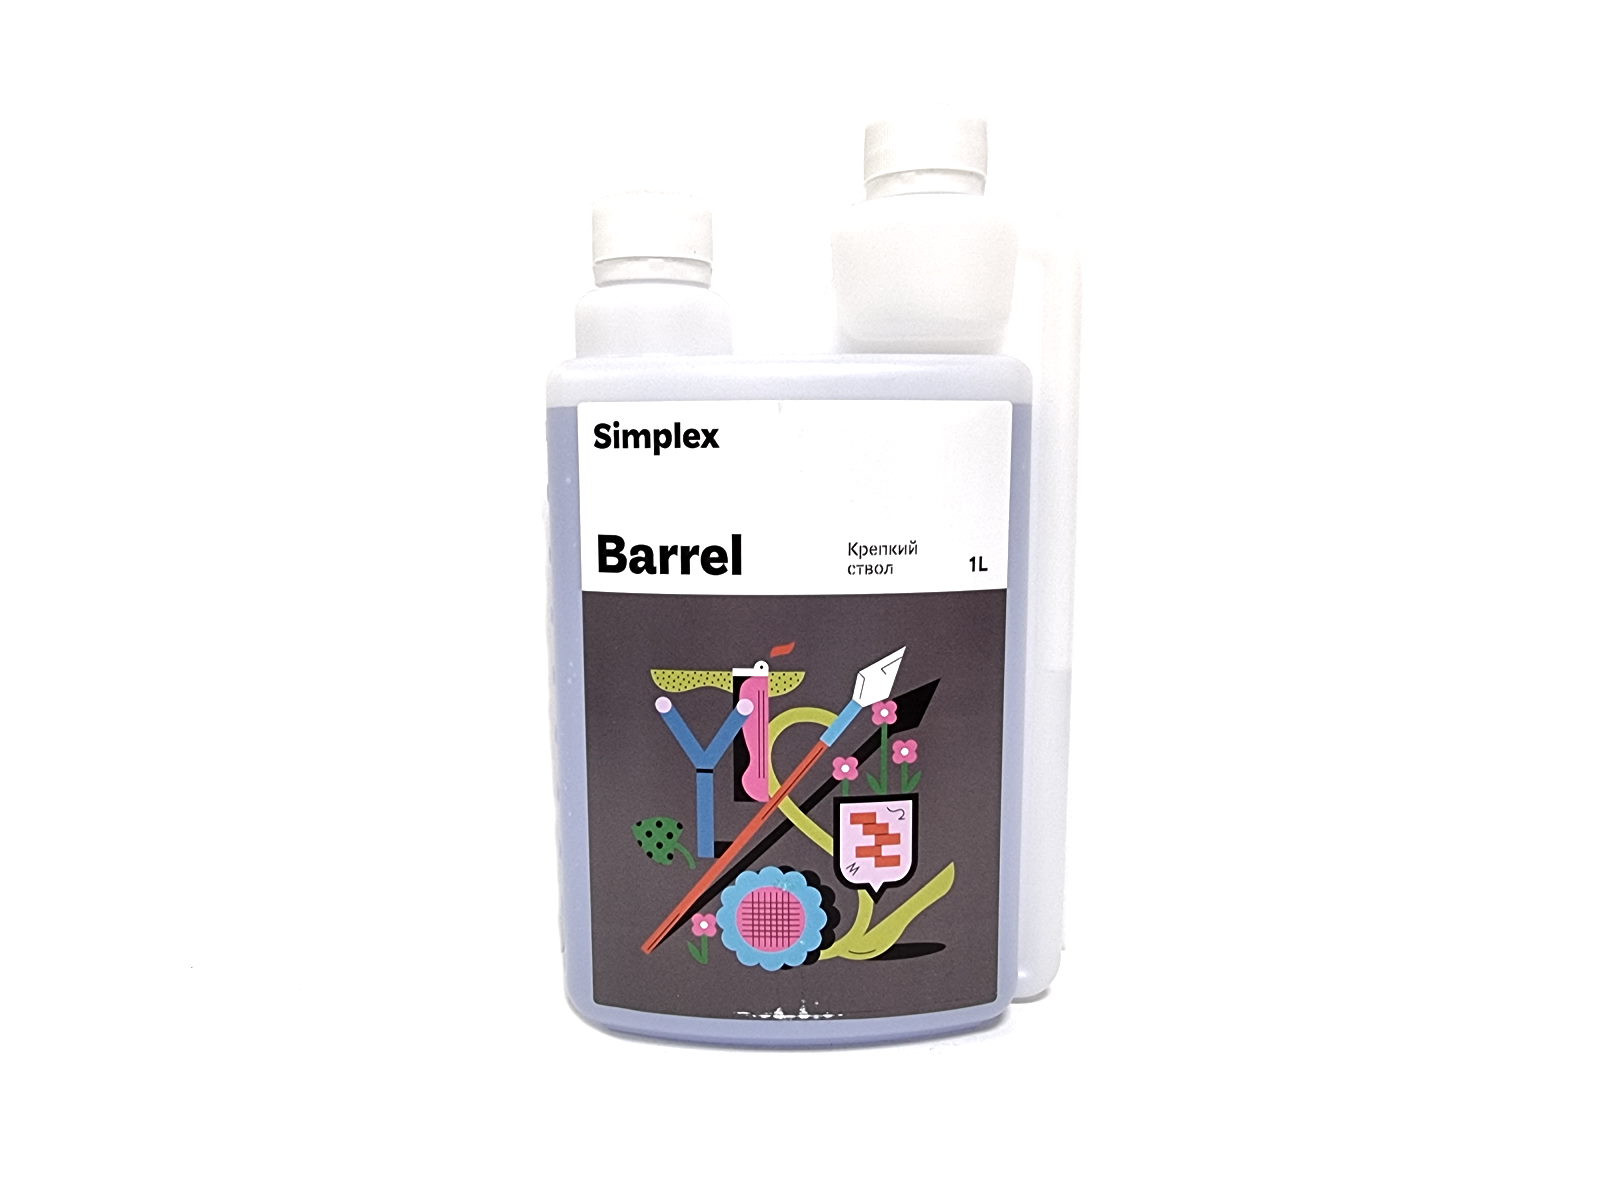 Simplex Barrel